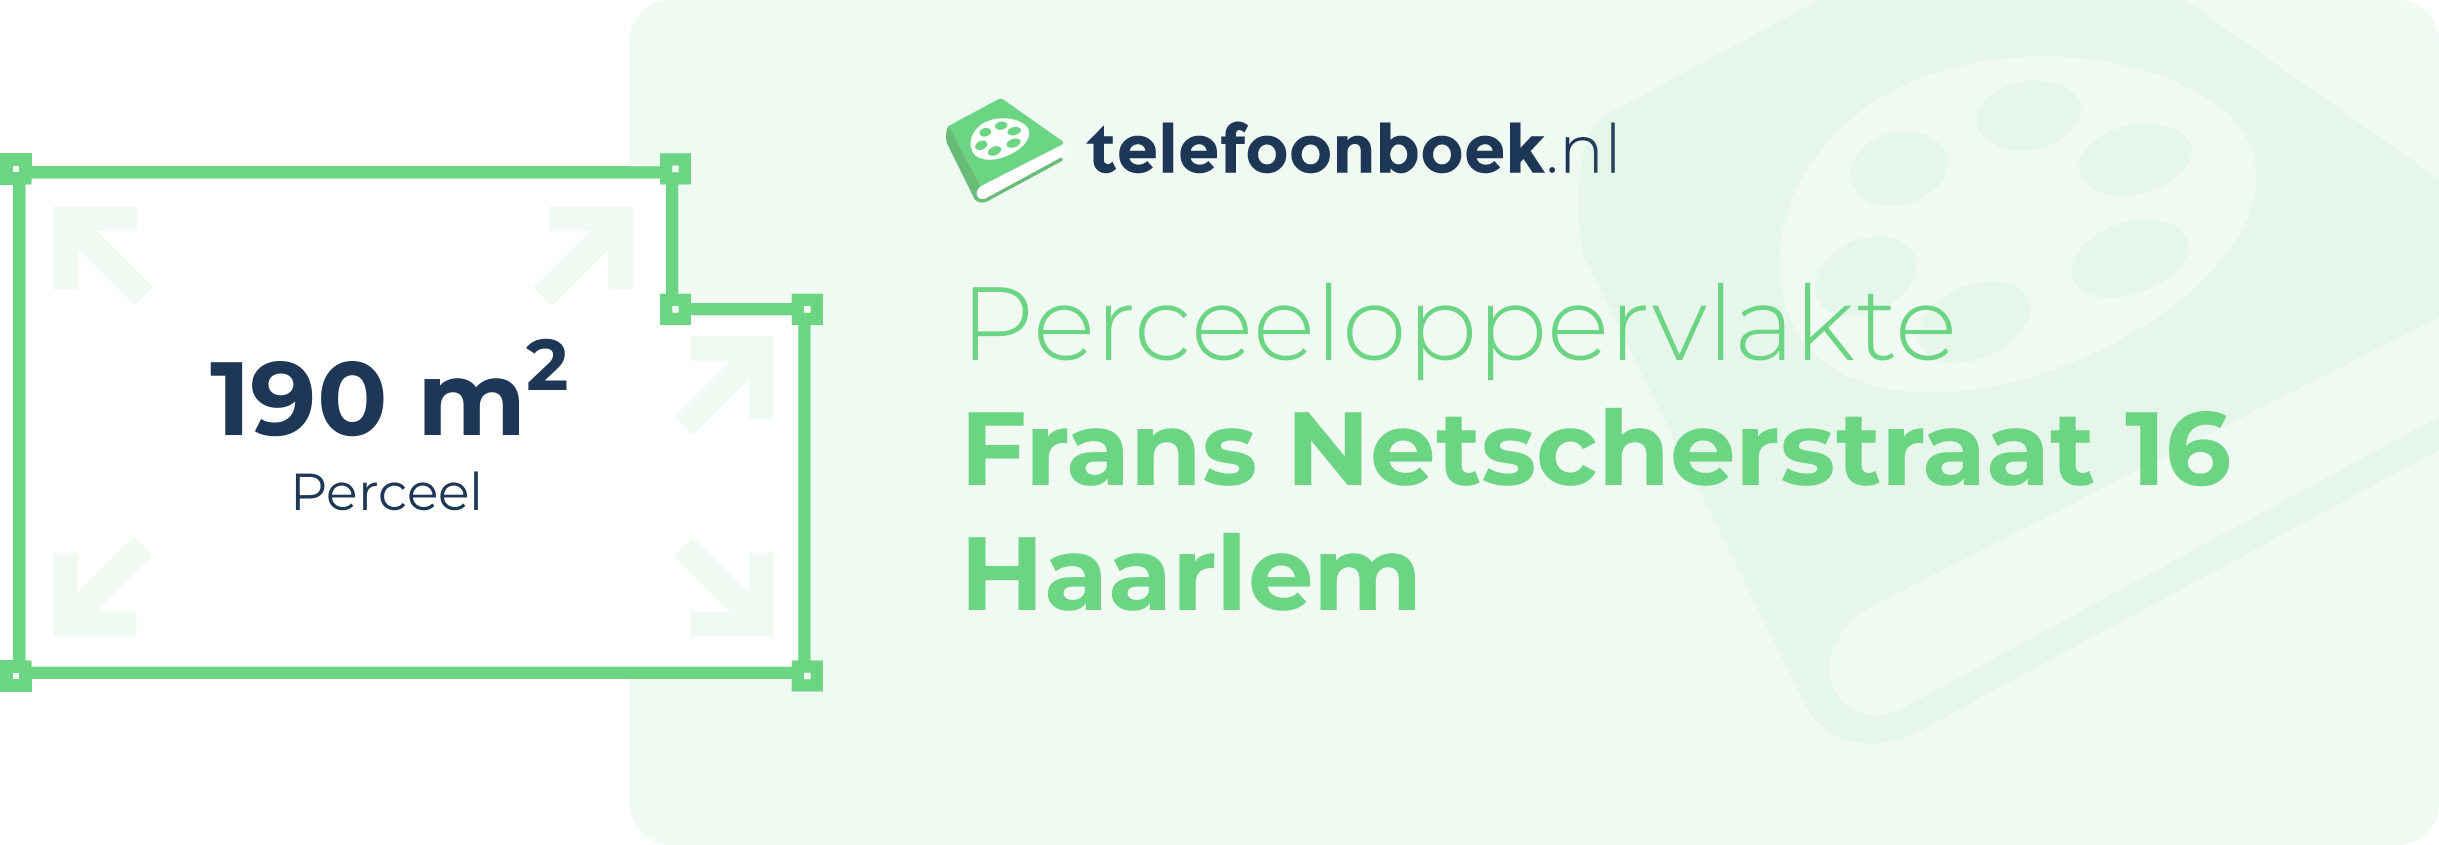 Perceeloppervlakte Frans Netscherstraat 16 Haarlem